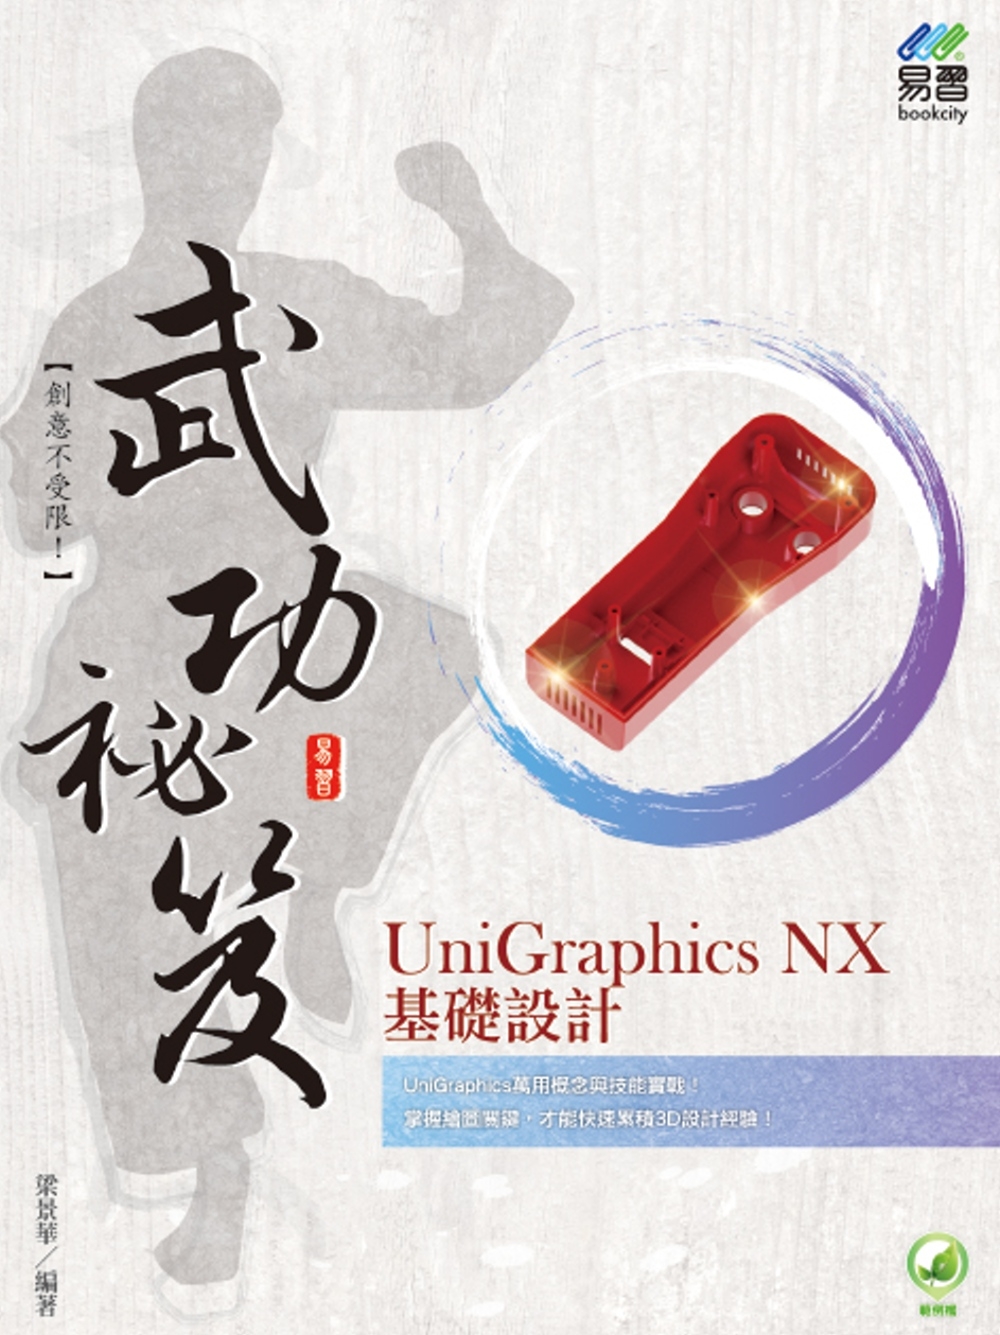 UniGraphics NX ...